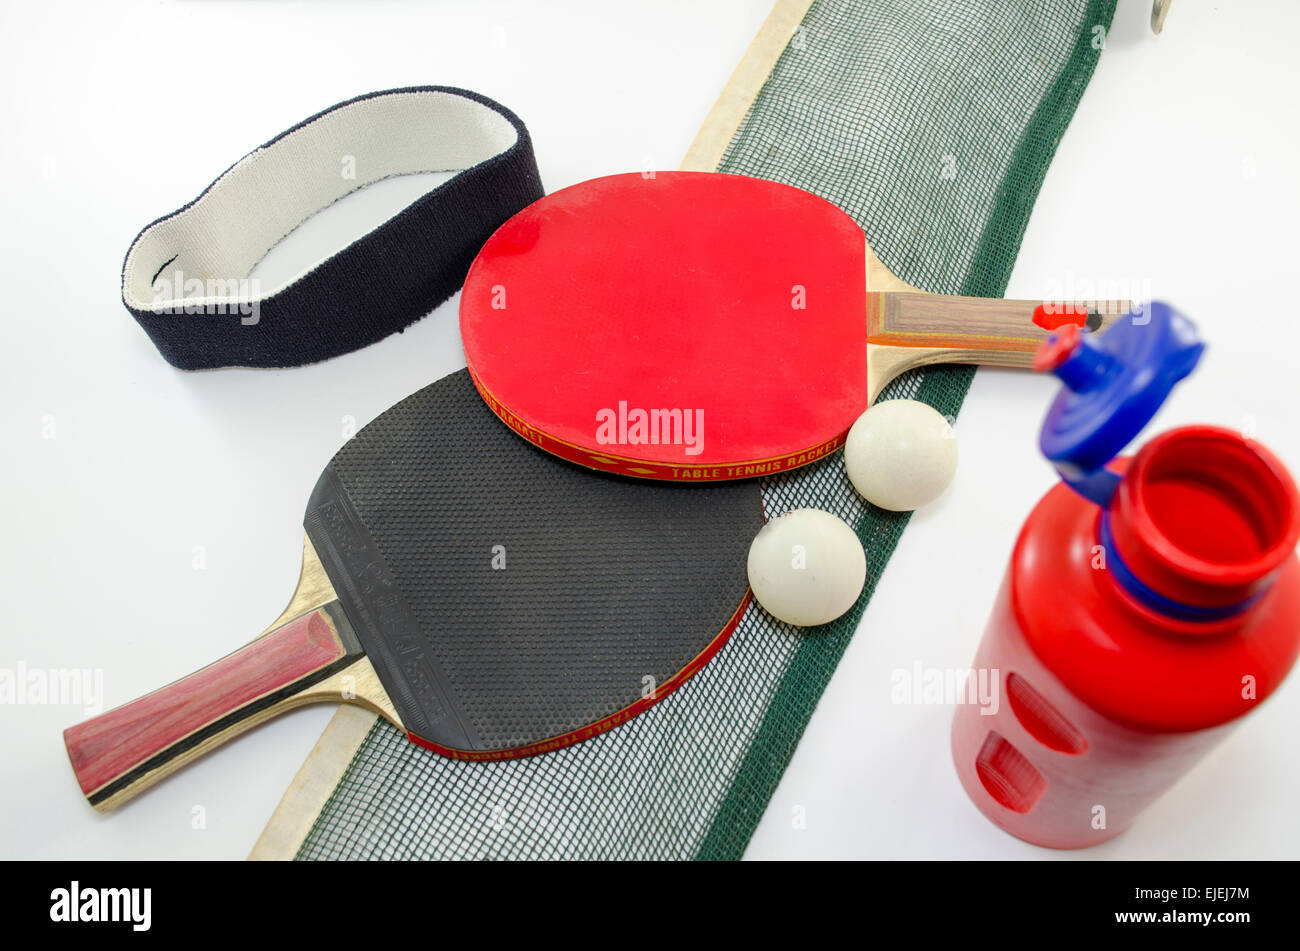 Zwei Tischtennis-Schläger und ein altes Netz isoliert auf weiss zusammen  mit einem Stirnband und eine Plastikflasche Wasser Stockfotografie - Alamy